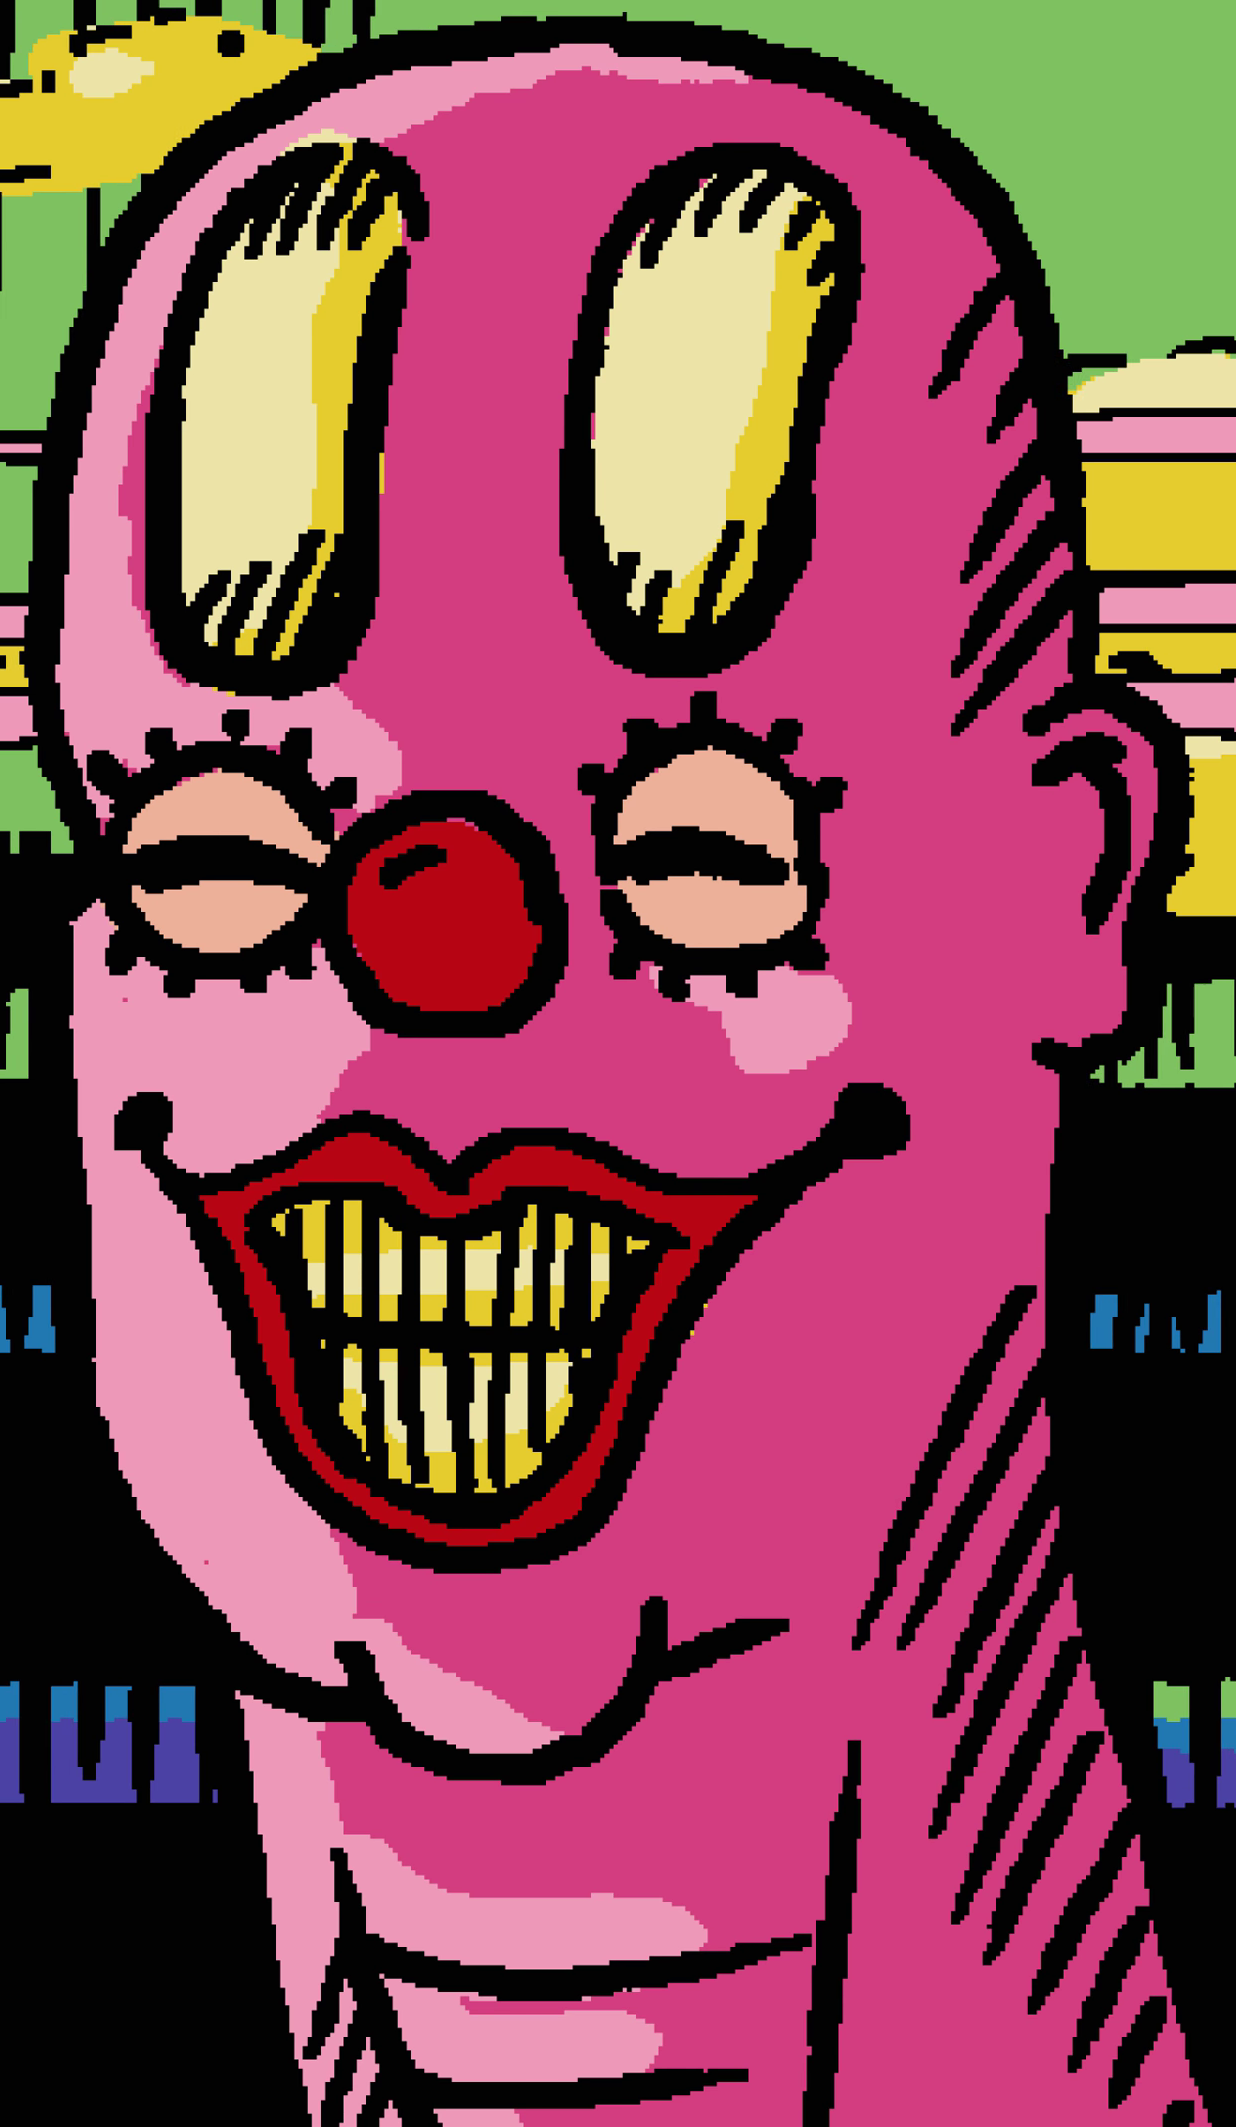 Grunkfuss the Clown, Villains Wiki